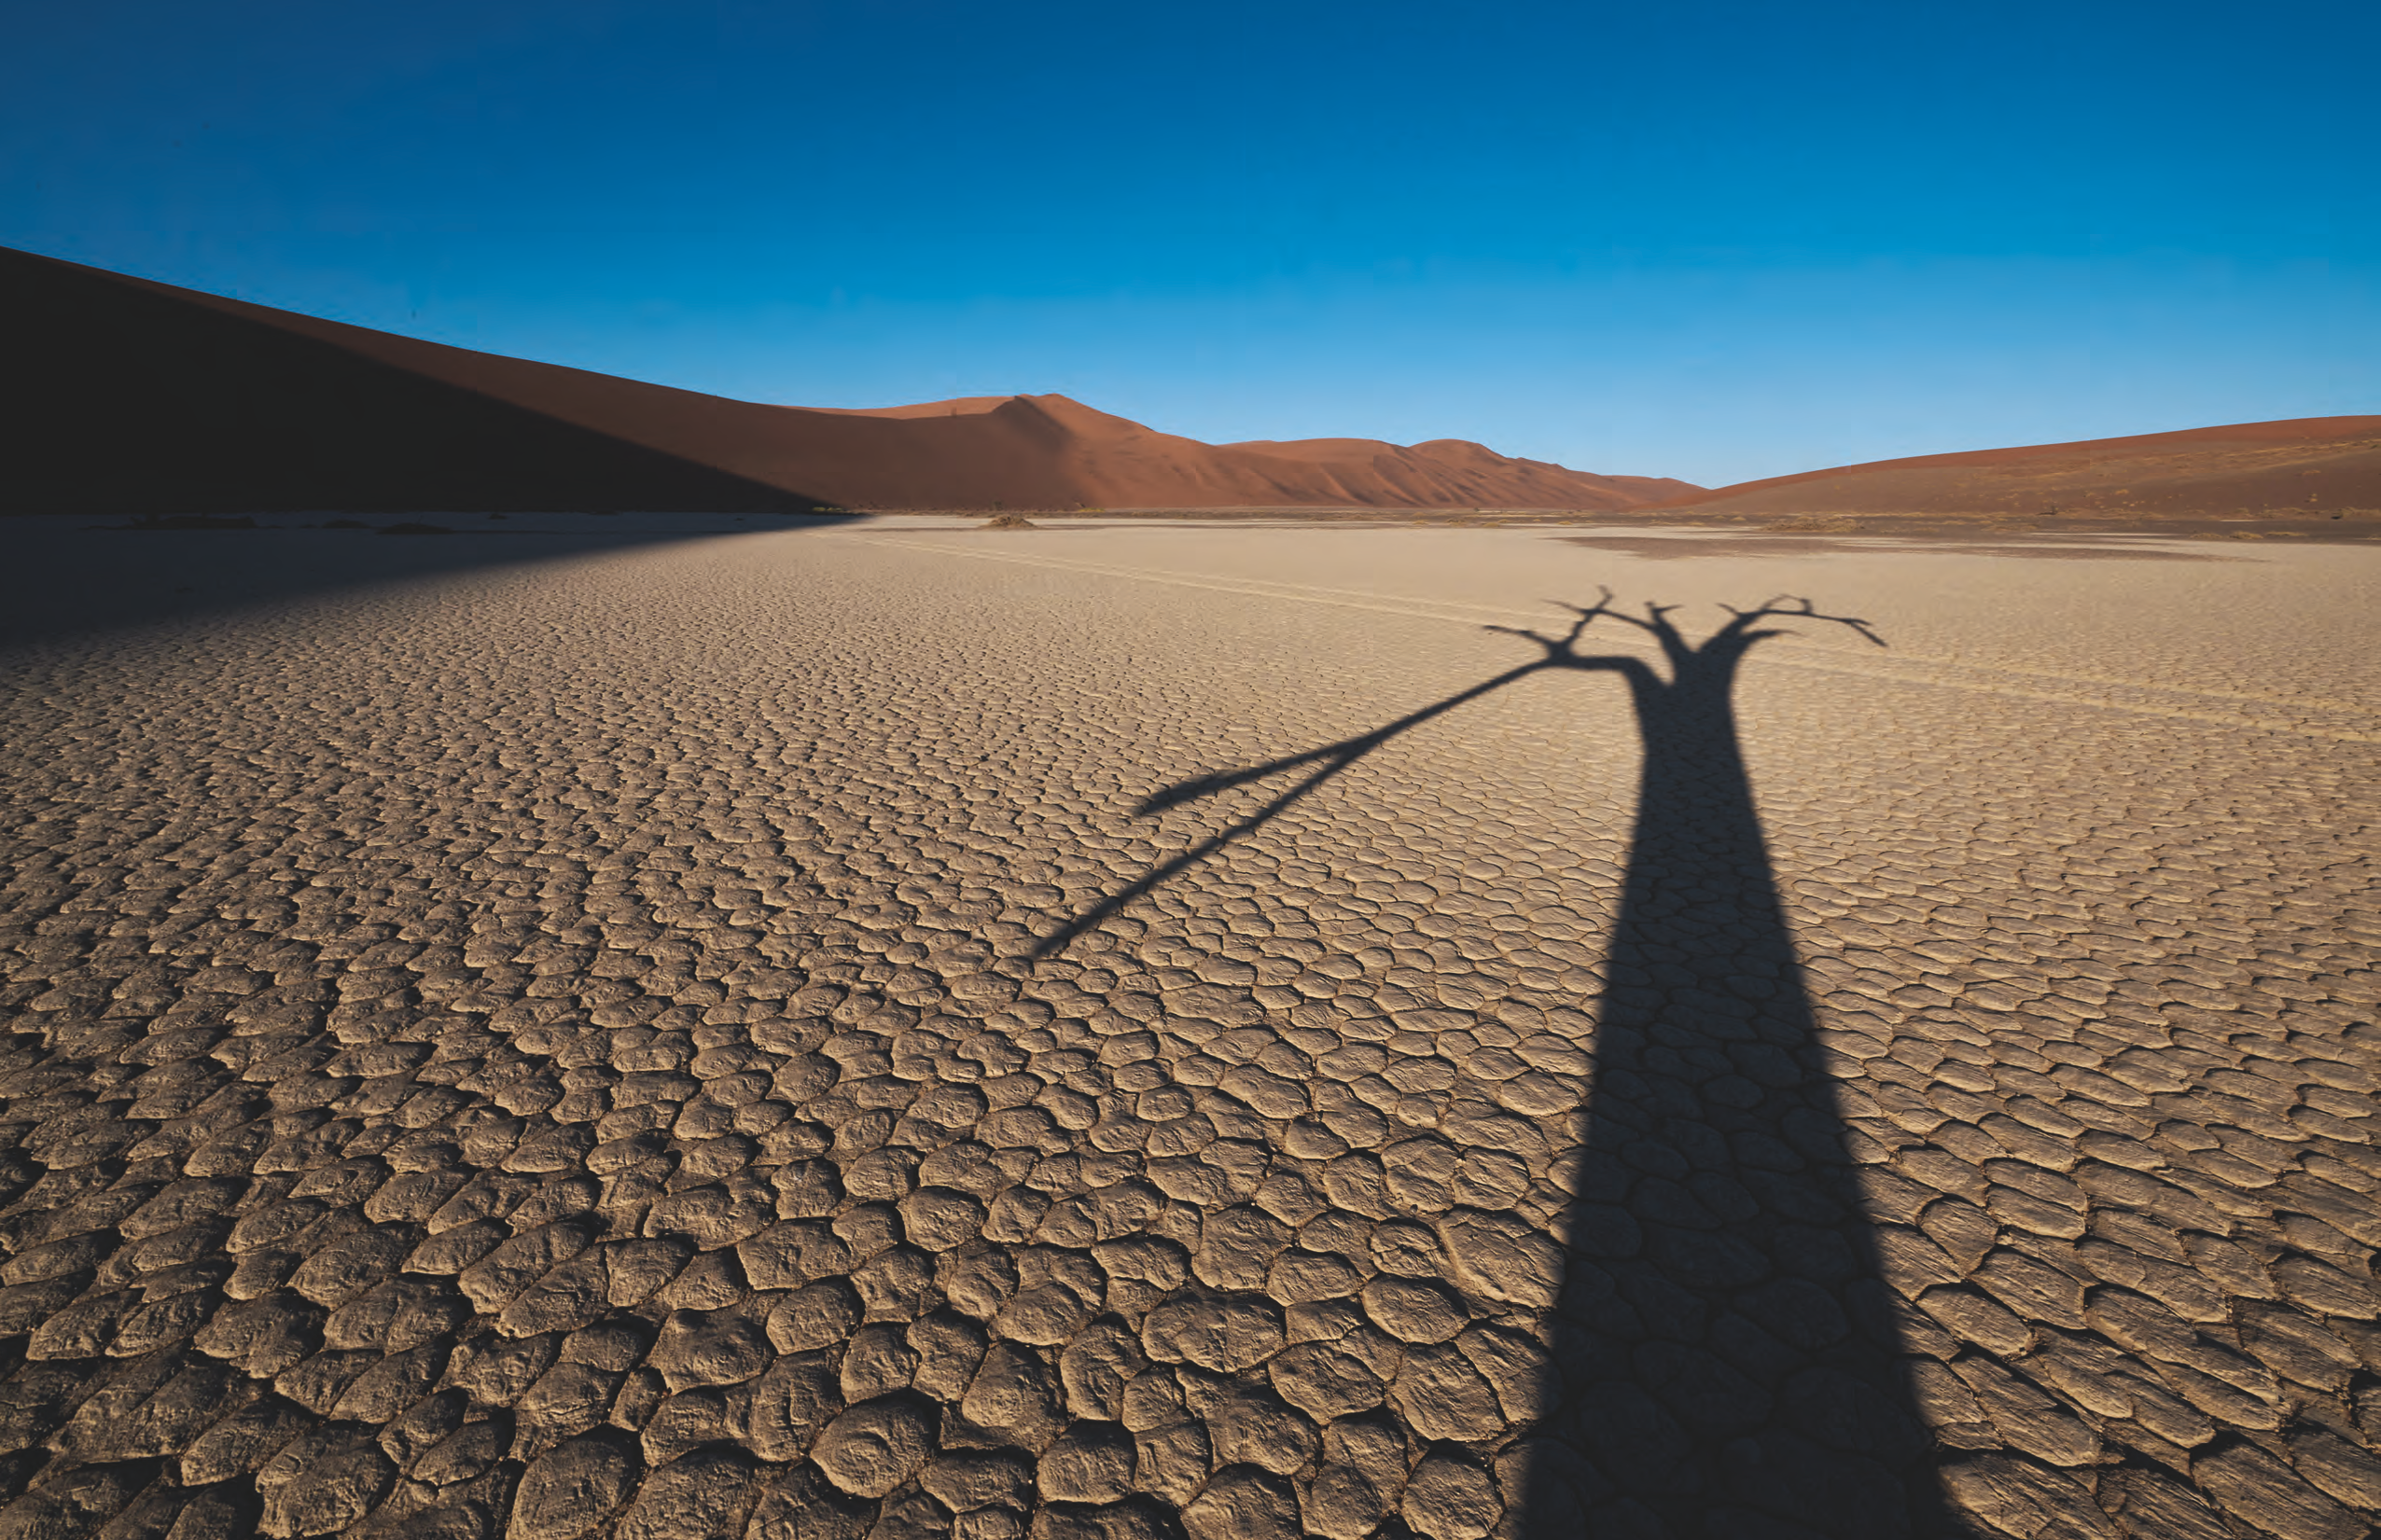 Le site de Dead Vlei, dans le désert du Namib, en Namibie. Les arbres y sont morts, mais avec la sécheresse, ils ne se décomposent plus. XXXXXXX L’impact du réchauffement climatique s’amplifi e sur le continent. Le dernier rapport du Groupe d’experts intergouvernemental sur l’évolution du climat, publié le 4 avril, nous empresse d’agir afi n d’inverser la tendance avant 2025. Ce qui laisse environ un millier de jours pour se retrousser les manches… La bonne nouvelle est que des solutions existent. Et que l’